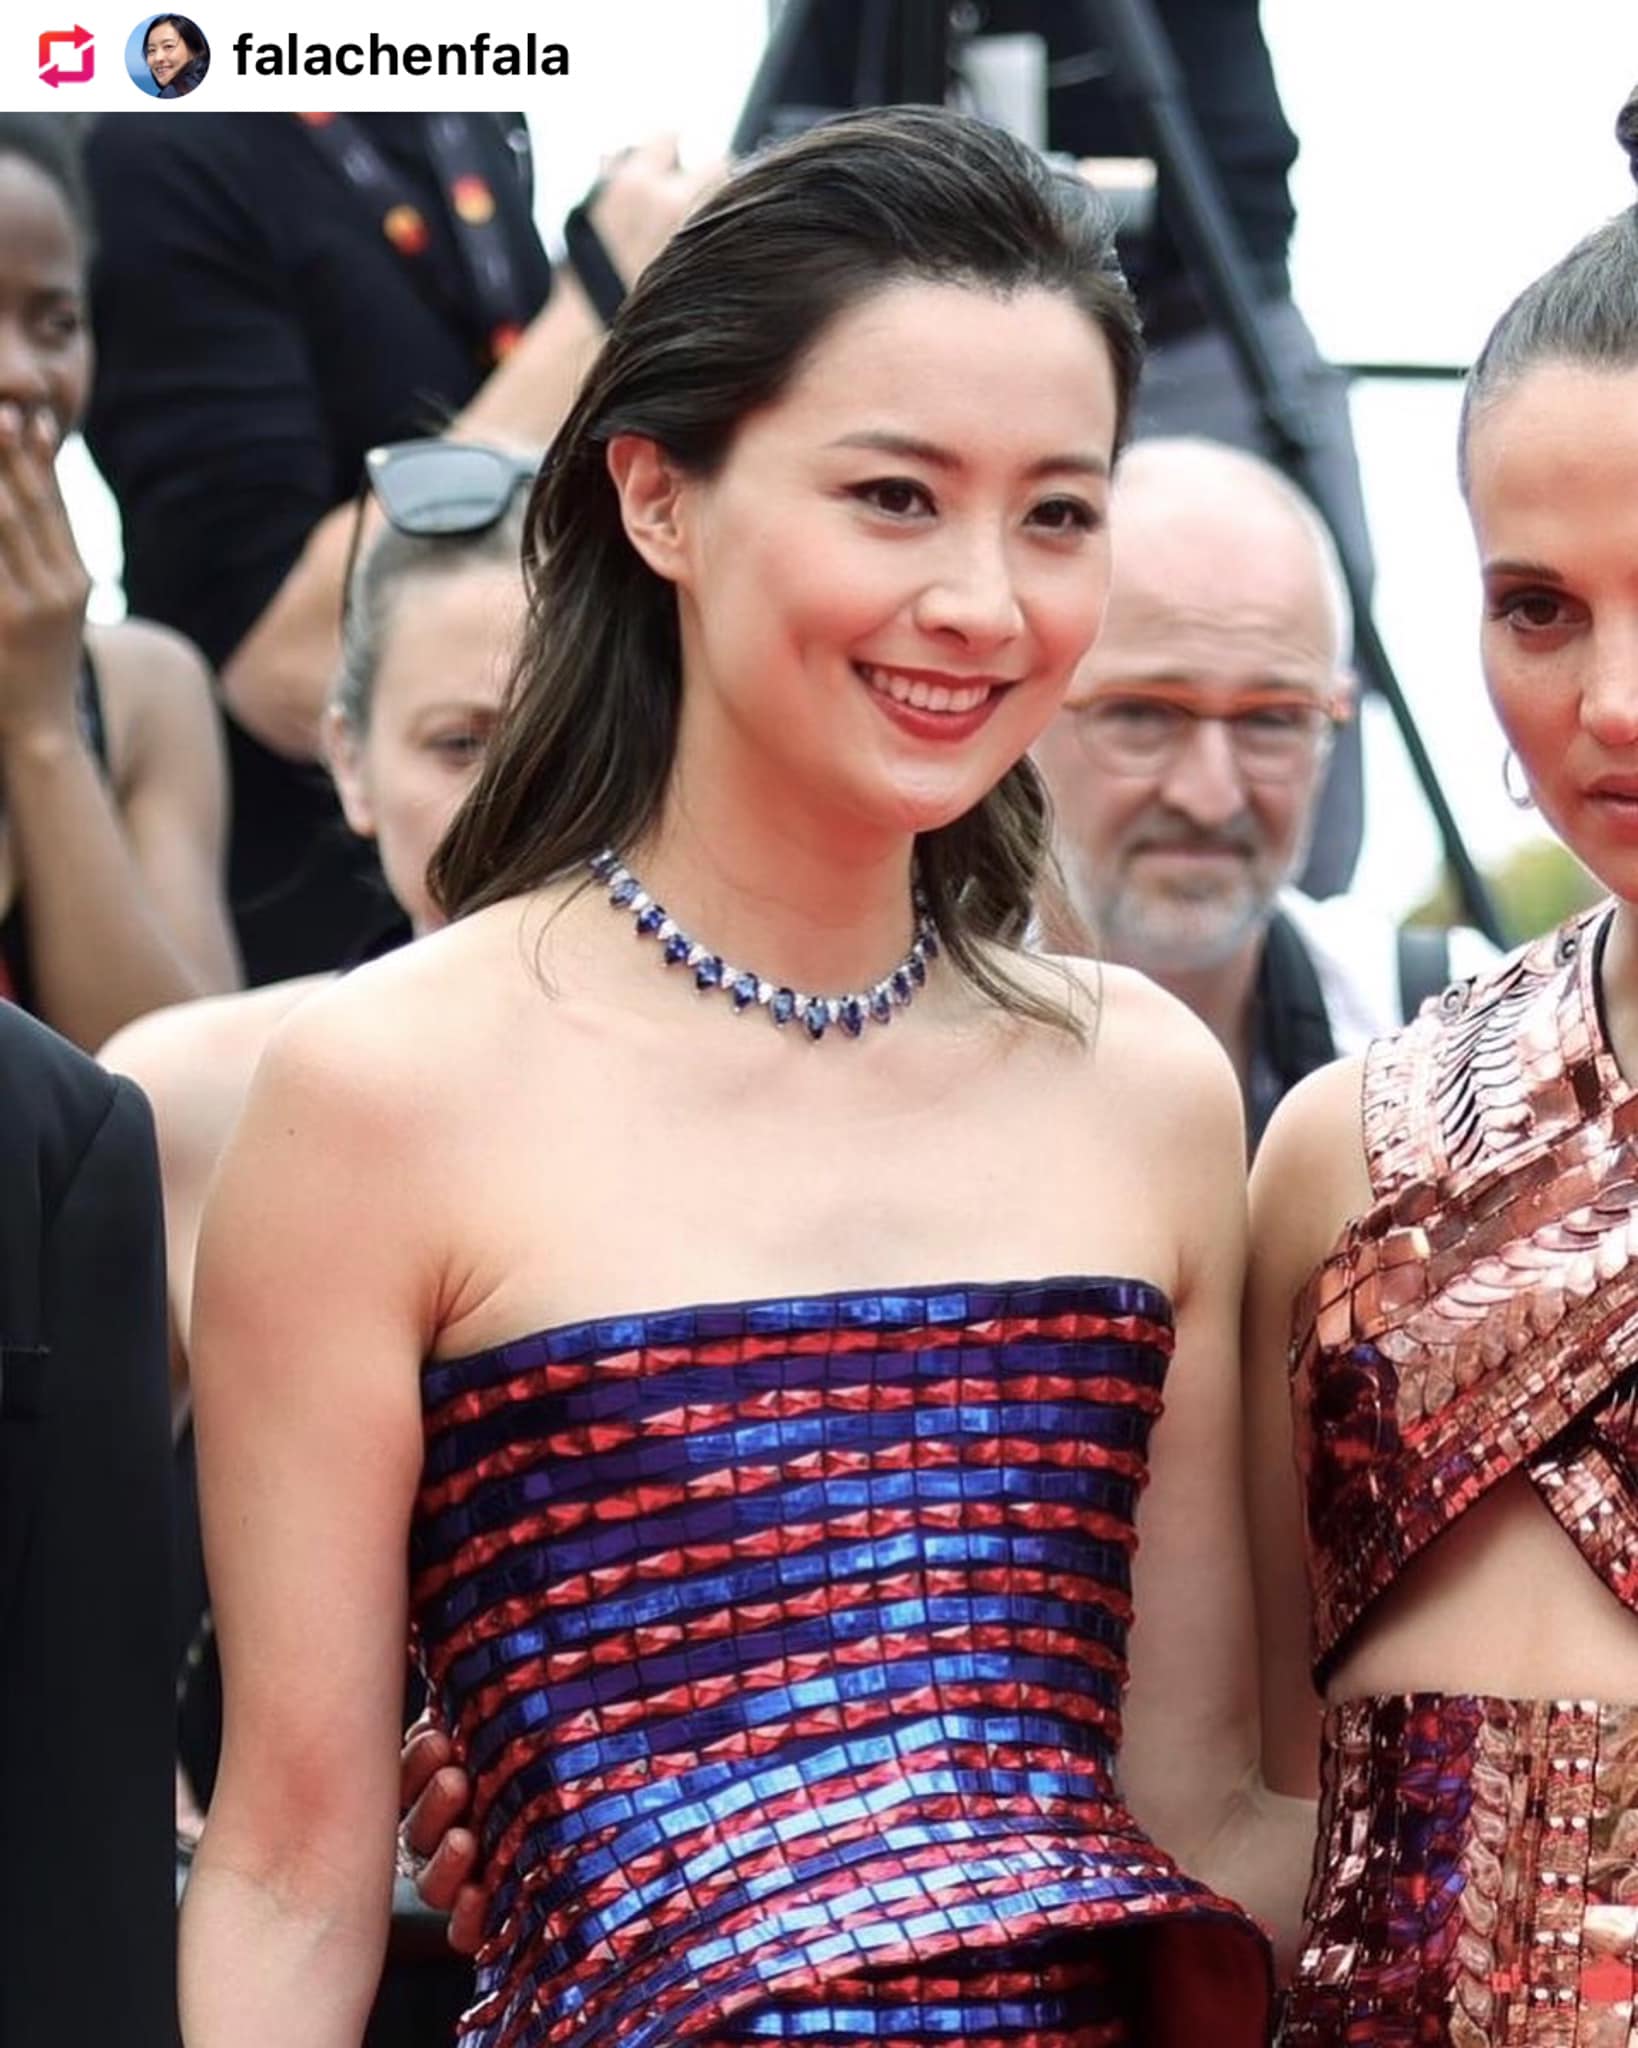 Thời trang LHP Cannes 2022 của sao châu Á: Thang Duy - IU nhẹ nhàng, Lý Nhã Kỳ - Hương Giang bị chê 'lố' - ảnh 10